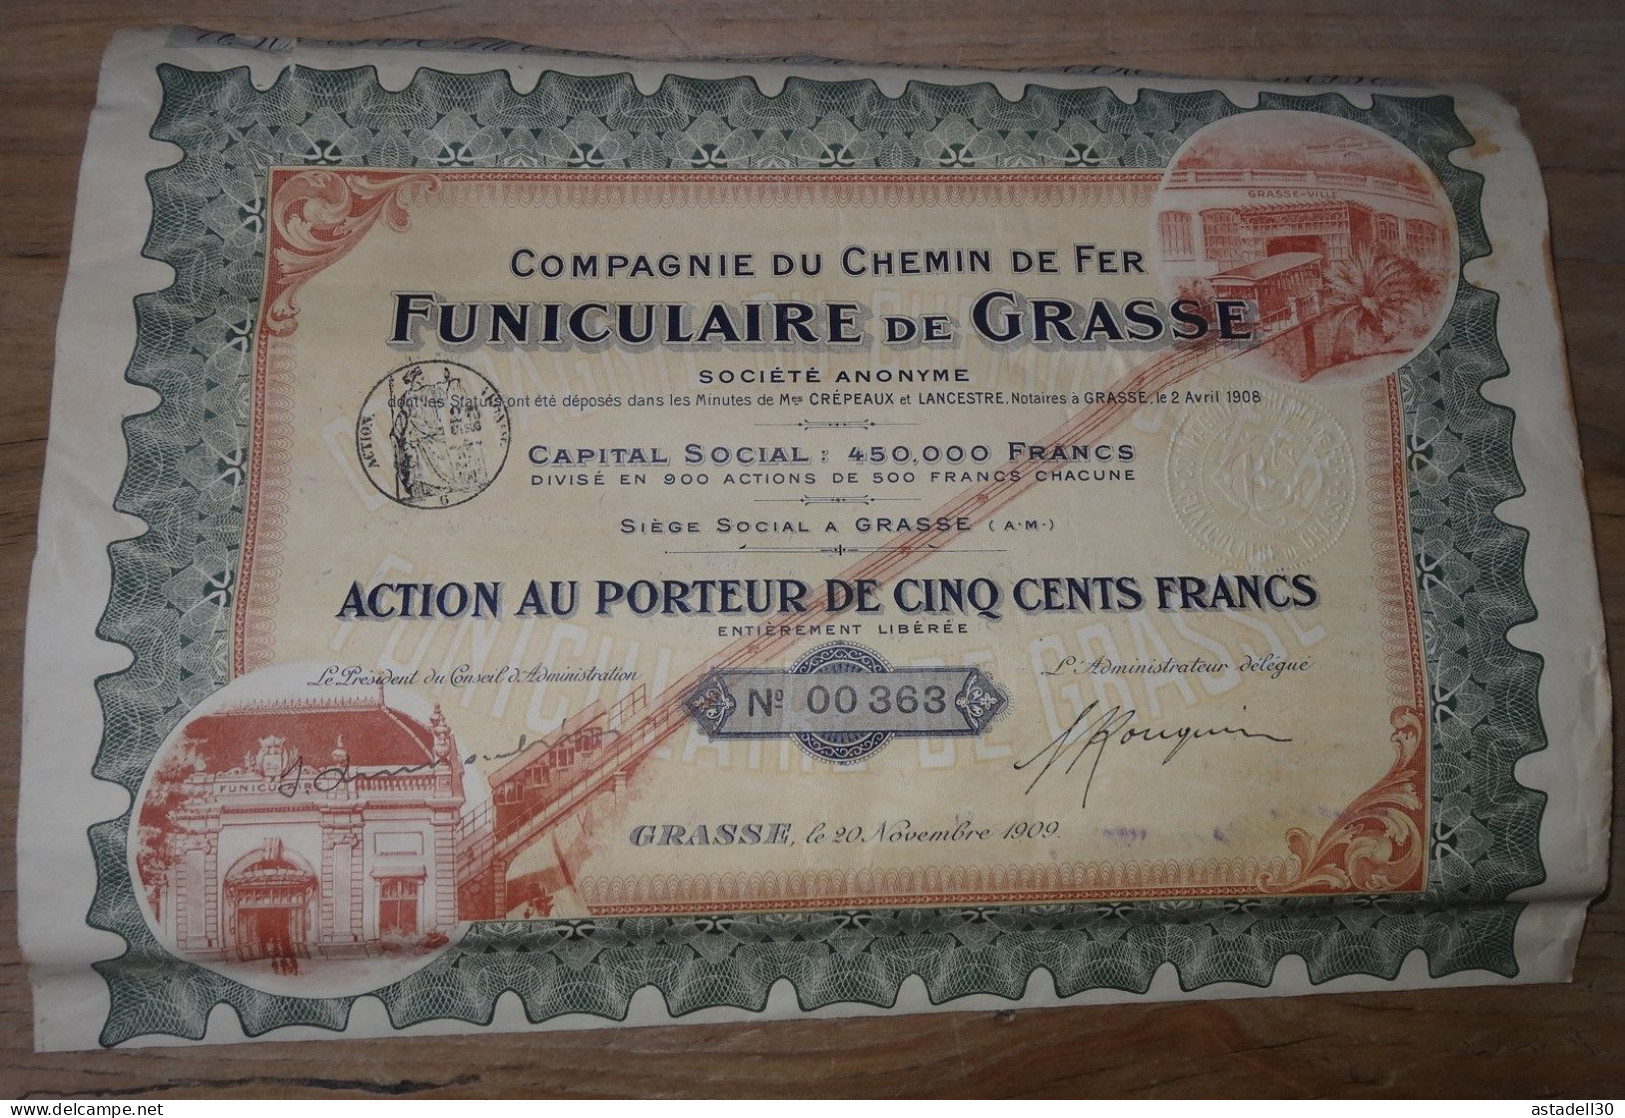 Funiculaire De GRASSE, Rare Action De 500 Francs - 1909  .......  CL9-31a - Chemin De Fer & Tramway